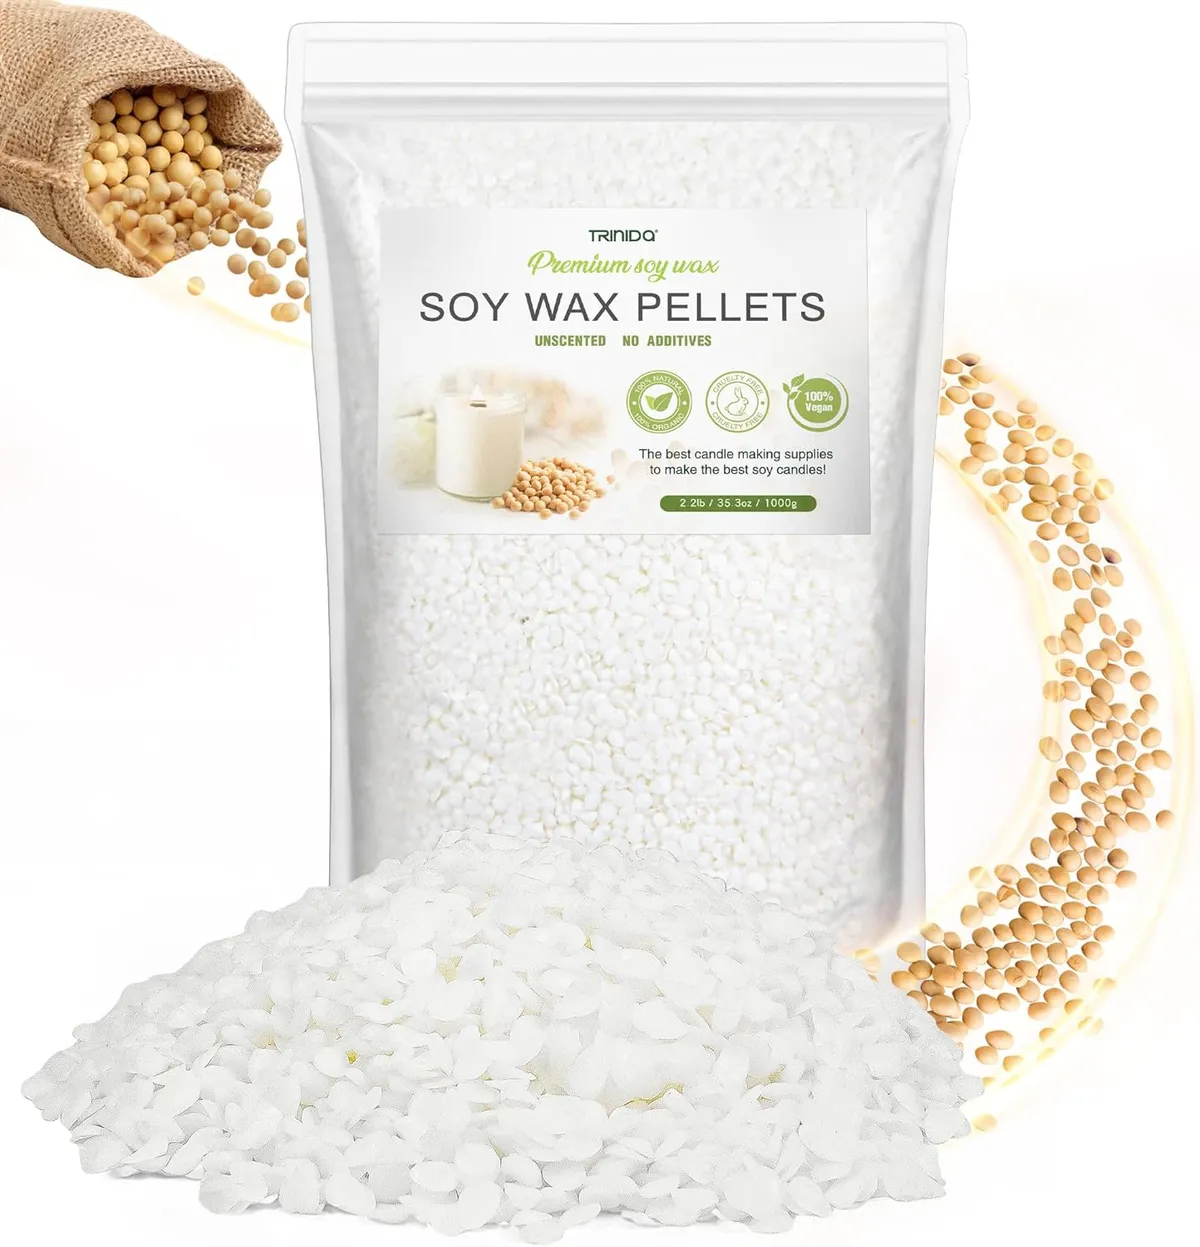 Wax pellets